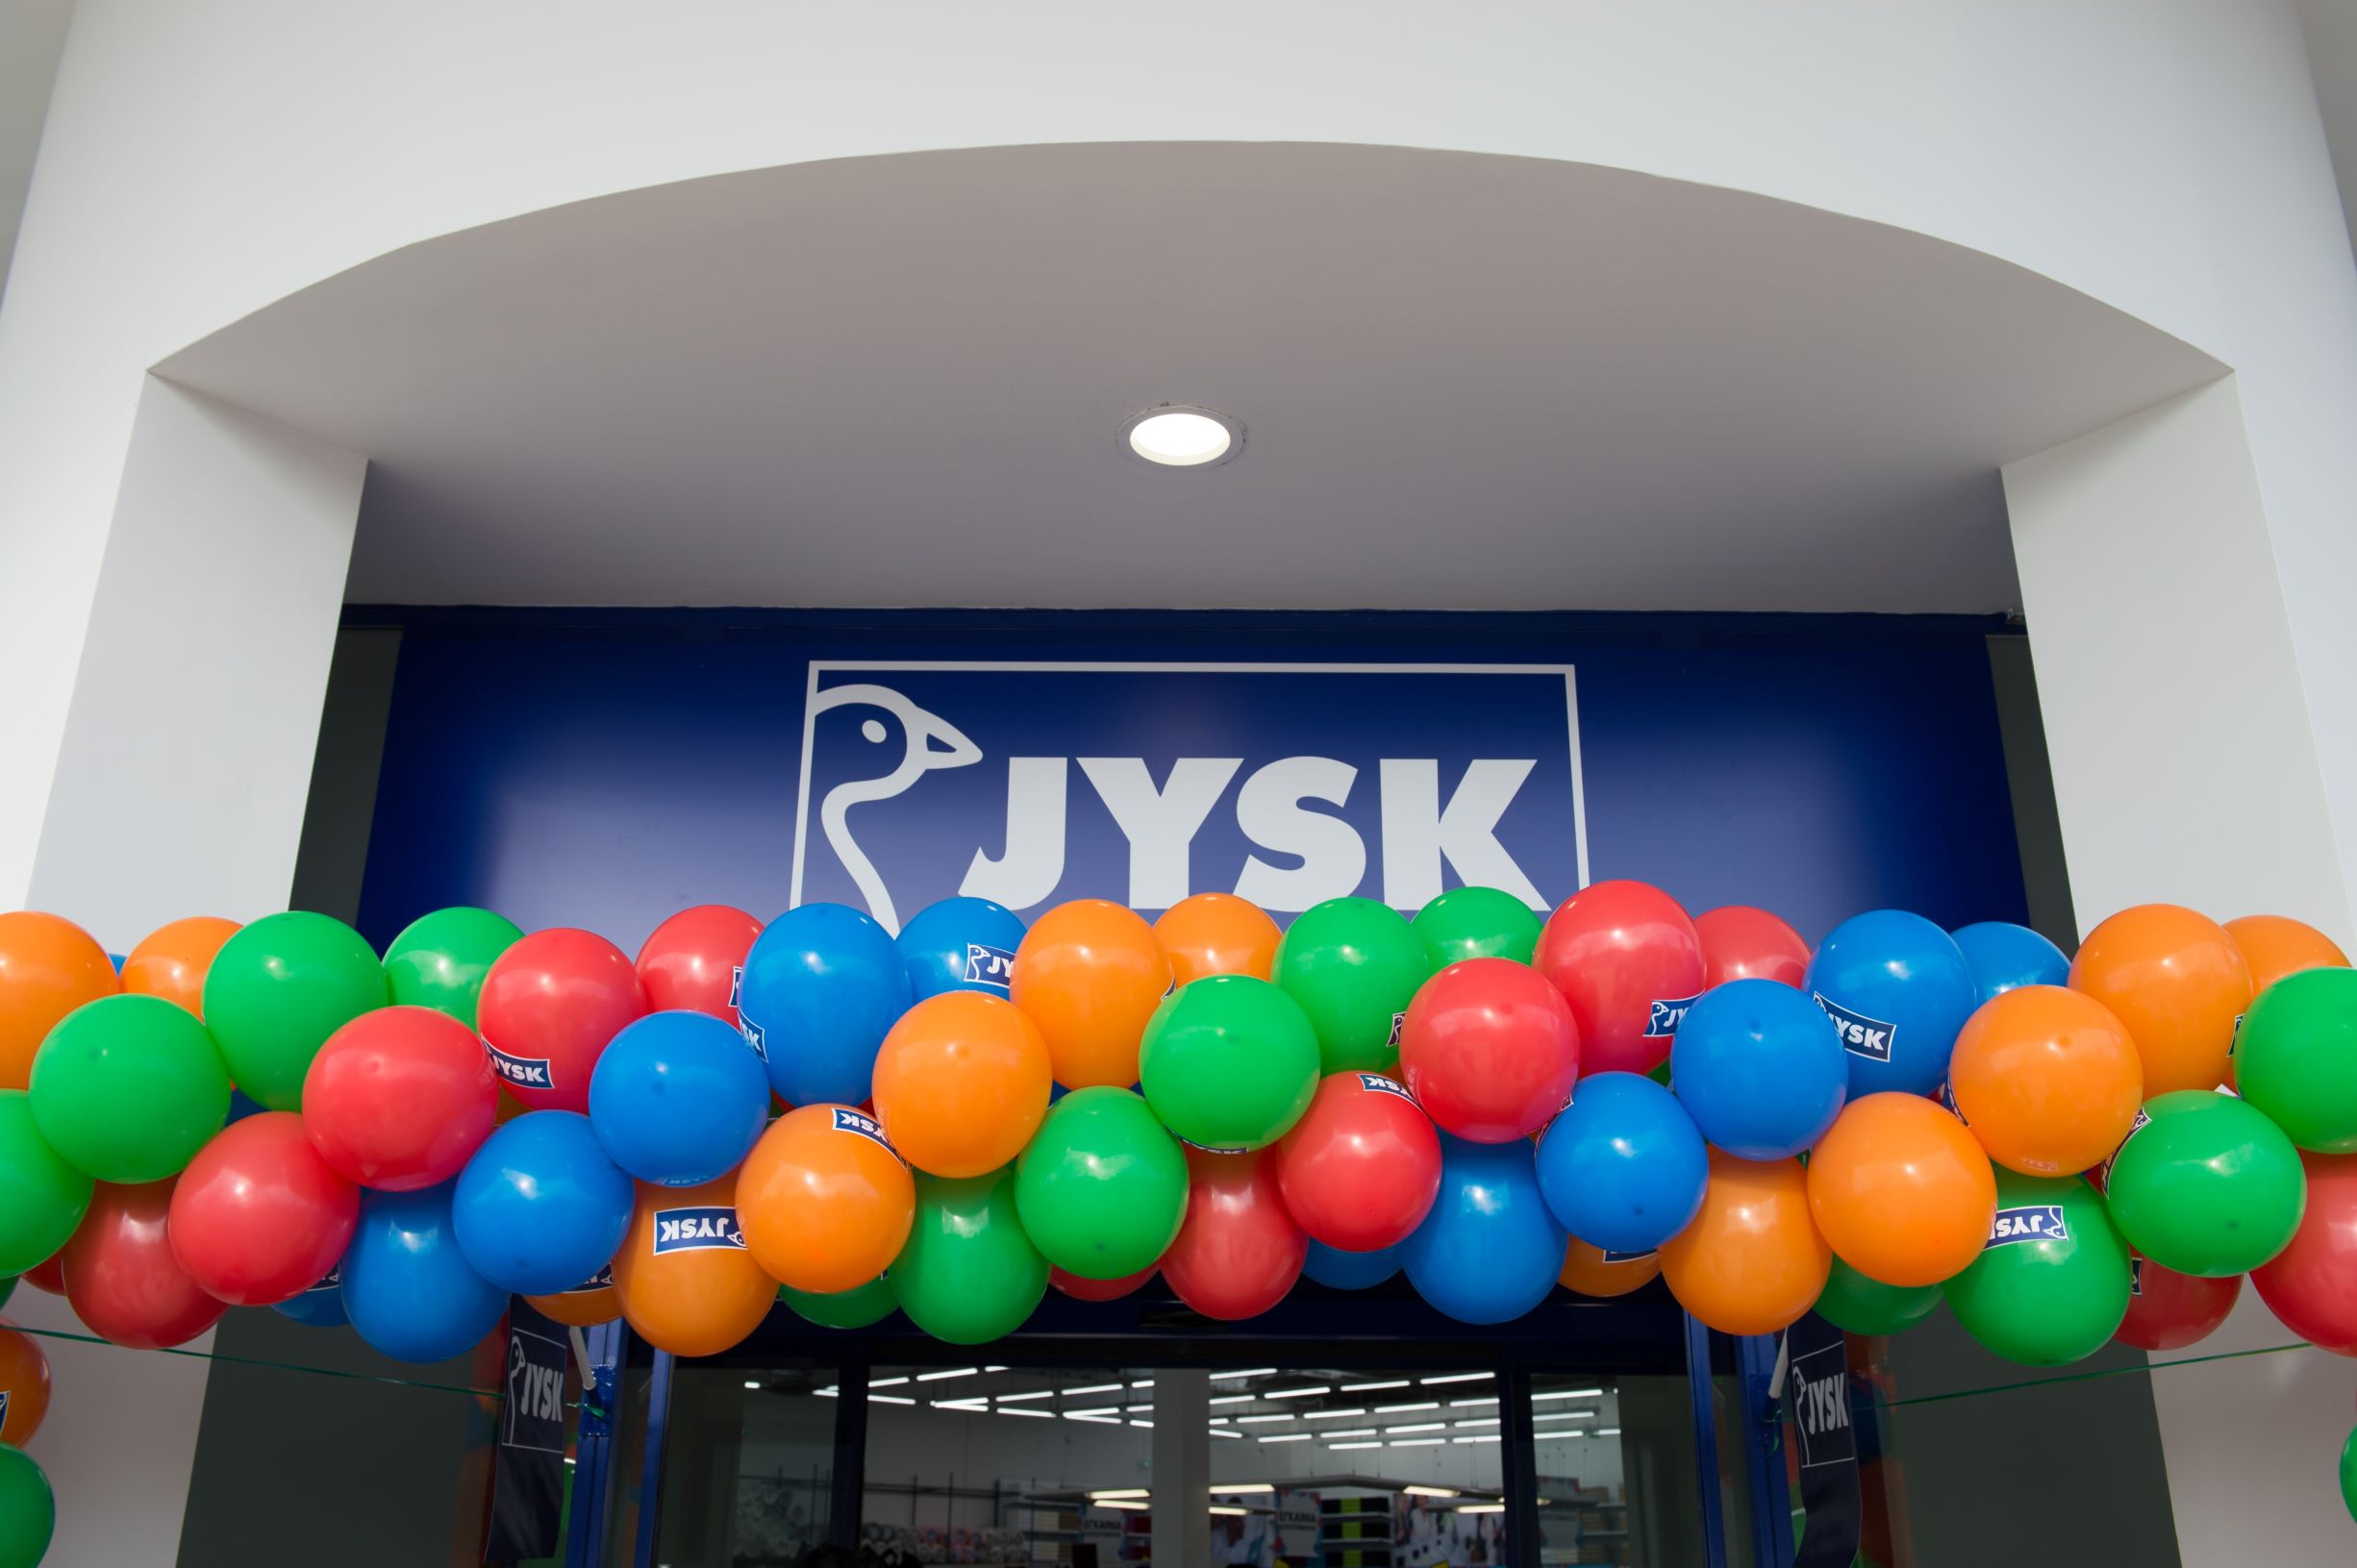 Νέο κατάστημα JYSK στη Γλυφάδα – Εγκαίνια Πέμπτη 27 Αυγούστου με μεγάλες προσφορές